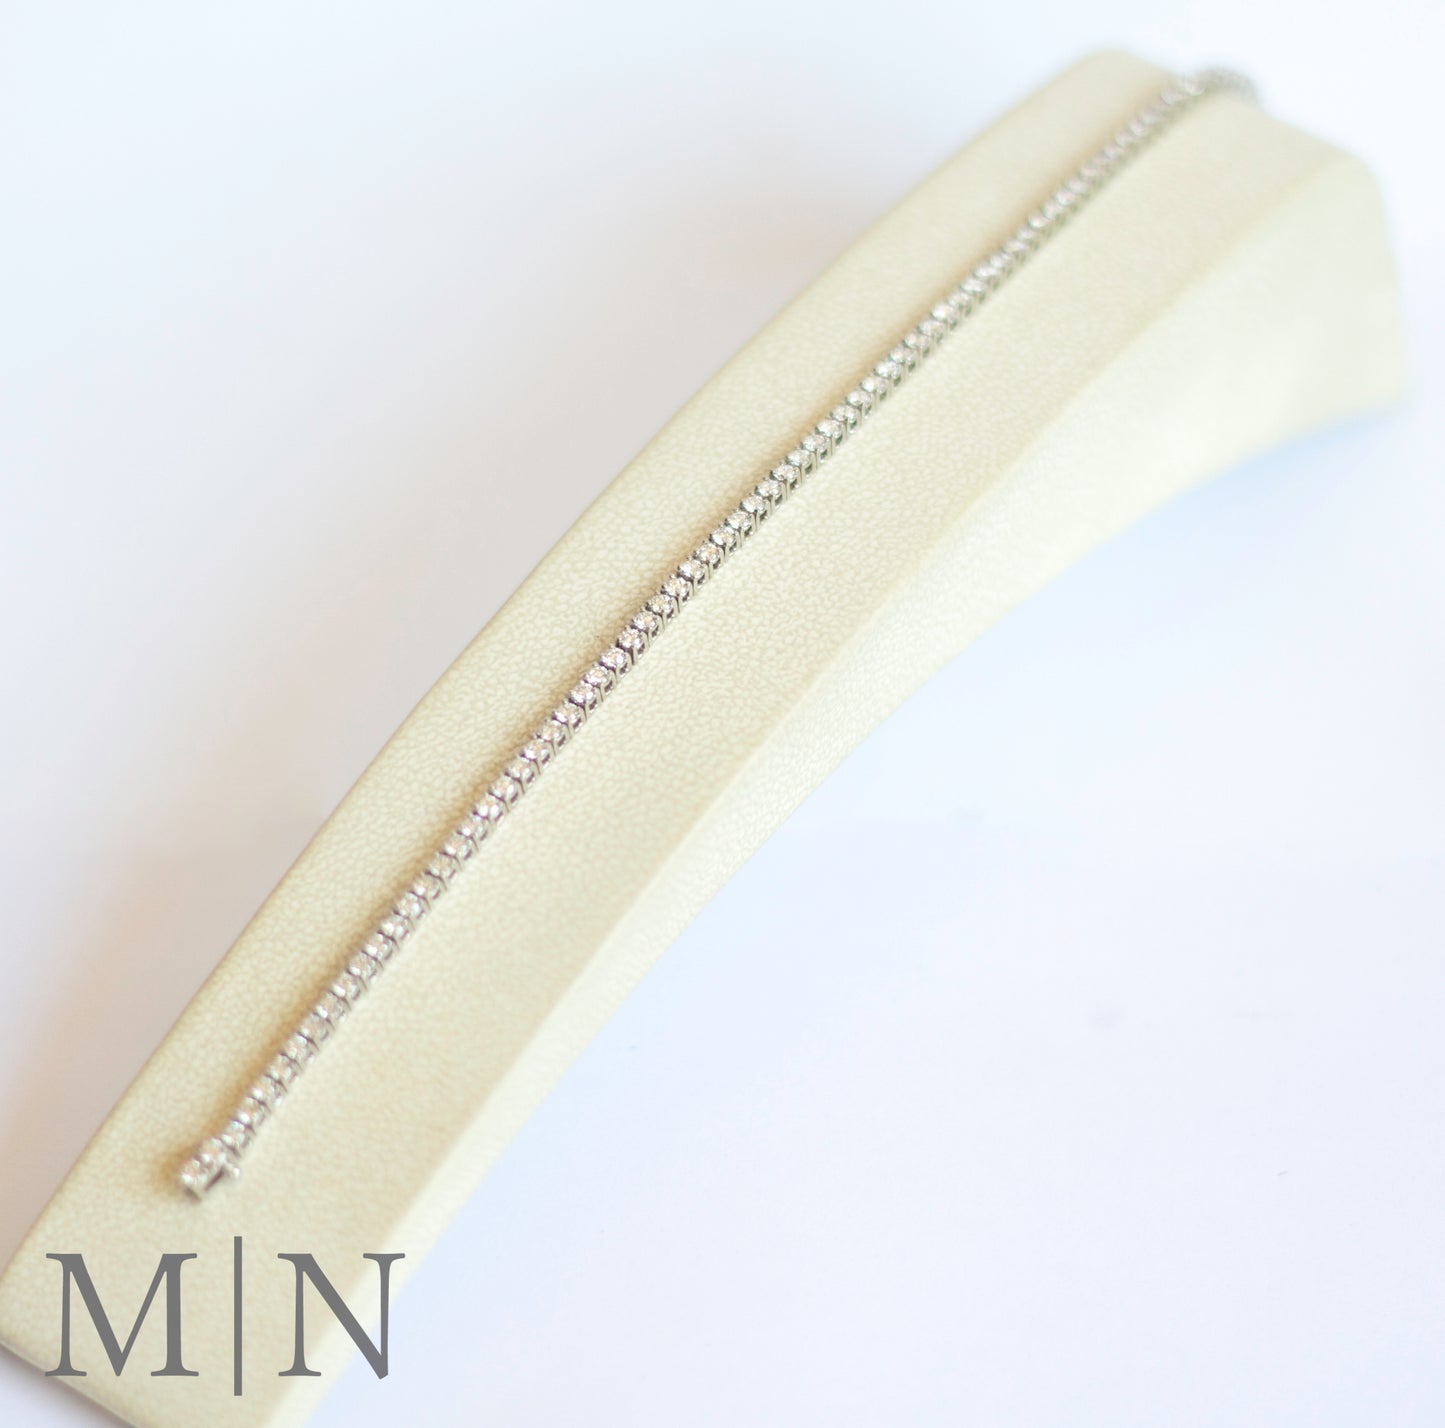 White Gold Diamond Tennis Bracelet